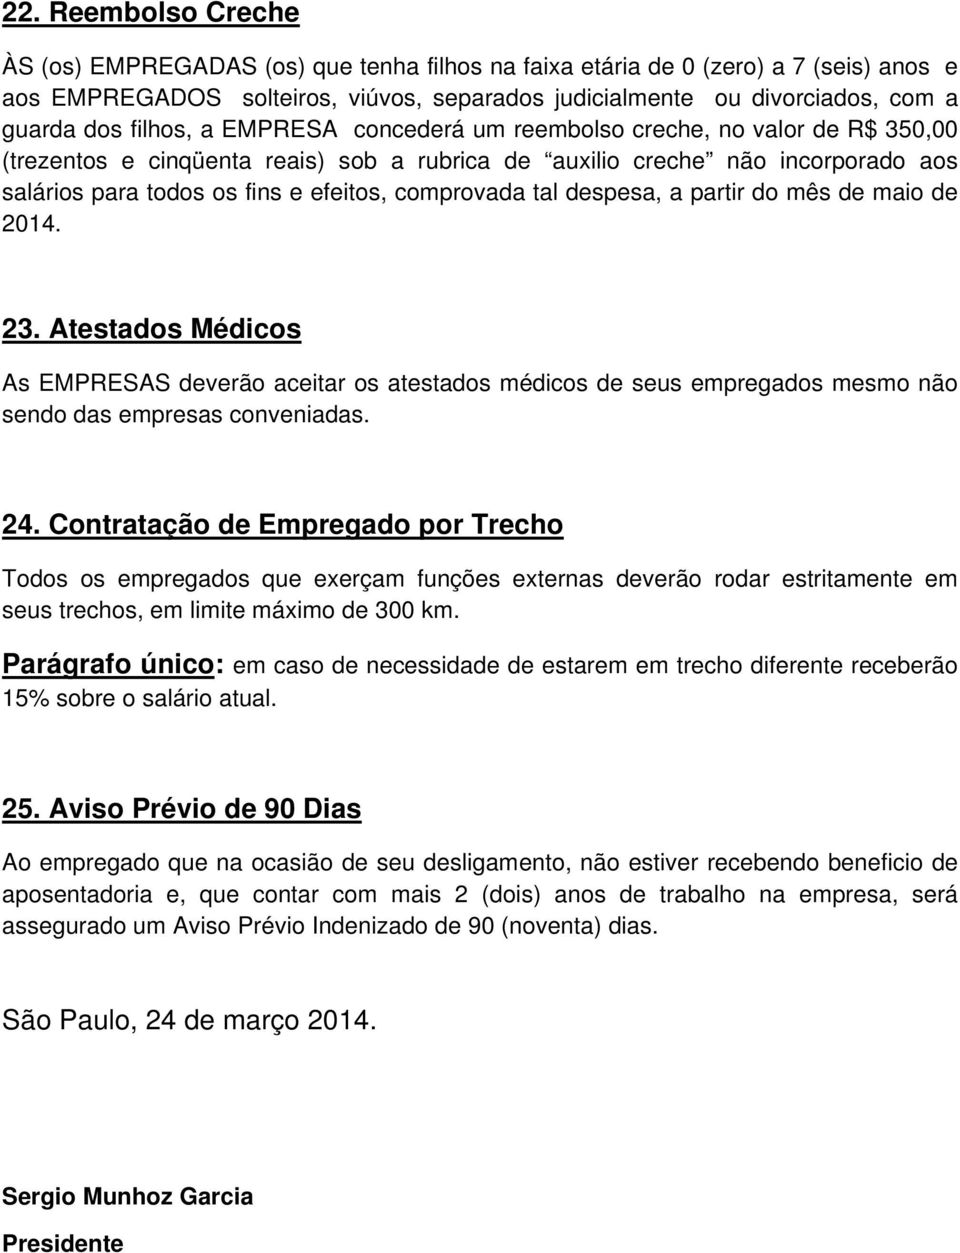 comprovada tal despesa, a partir do mês de maio de 2014. 23. Atestados Médicos As EMPRESAS deverão aceitar os atestados médicos de seus empregados mesmo não sendo das empresas conveniadas. 24.